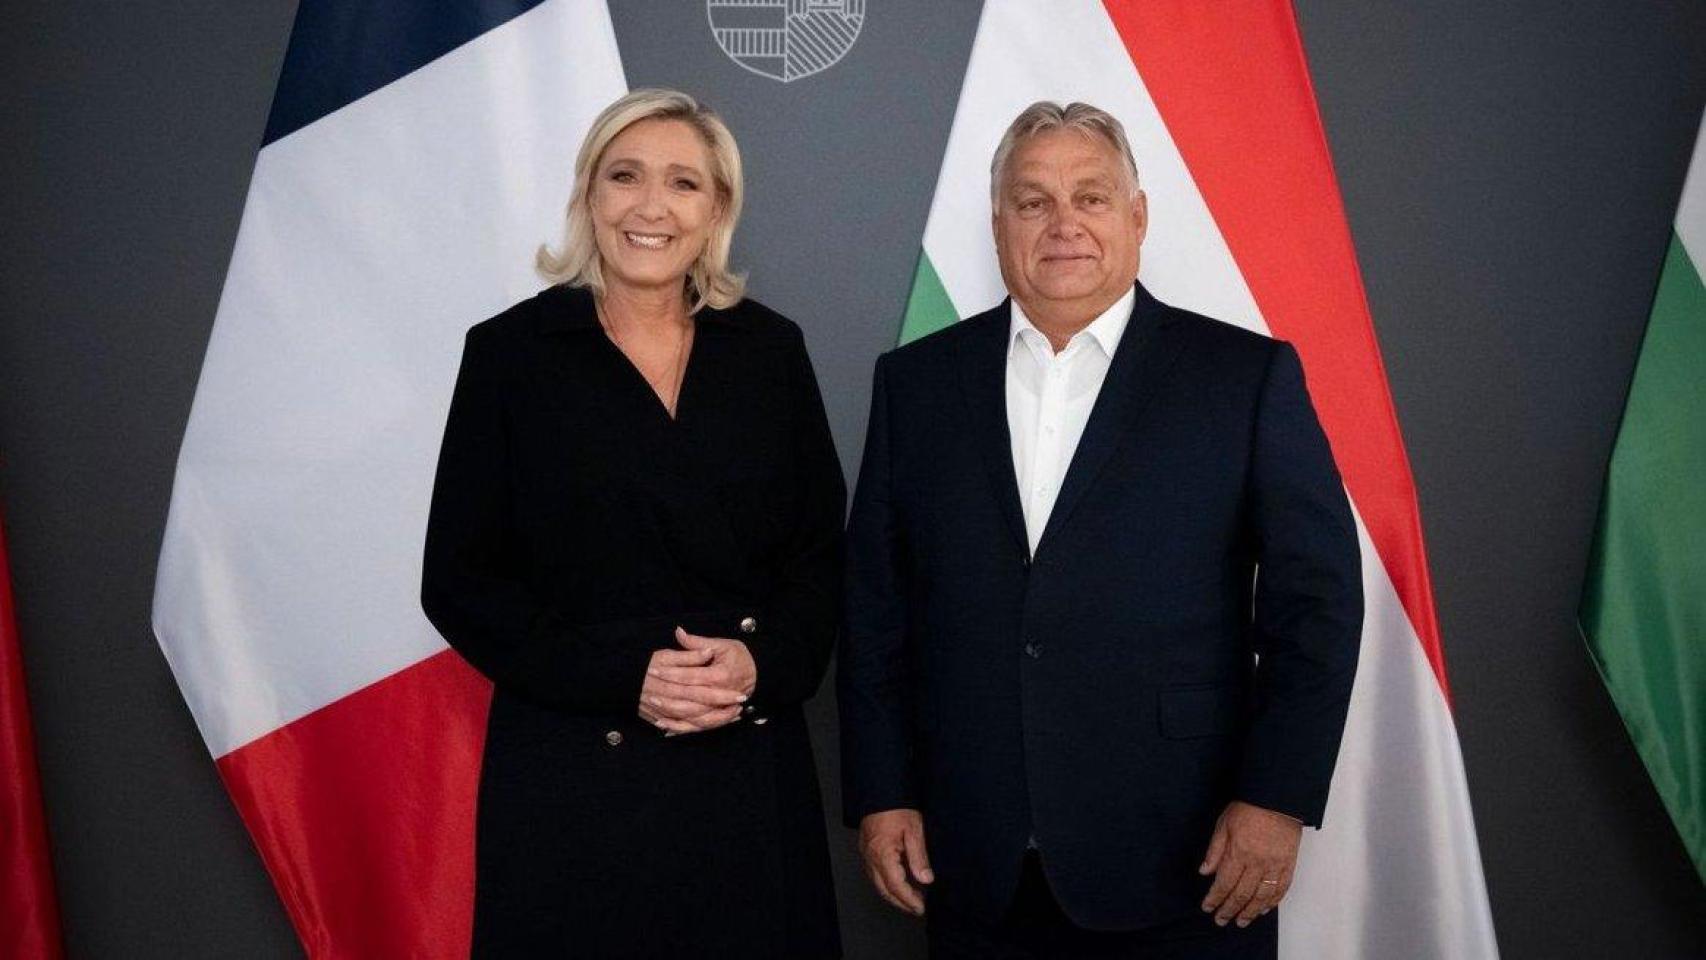 Marine Le Pen se ha sumado este lunes al grupo Patriotas por Europa de Viktor Orbán